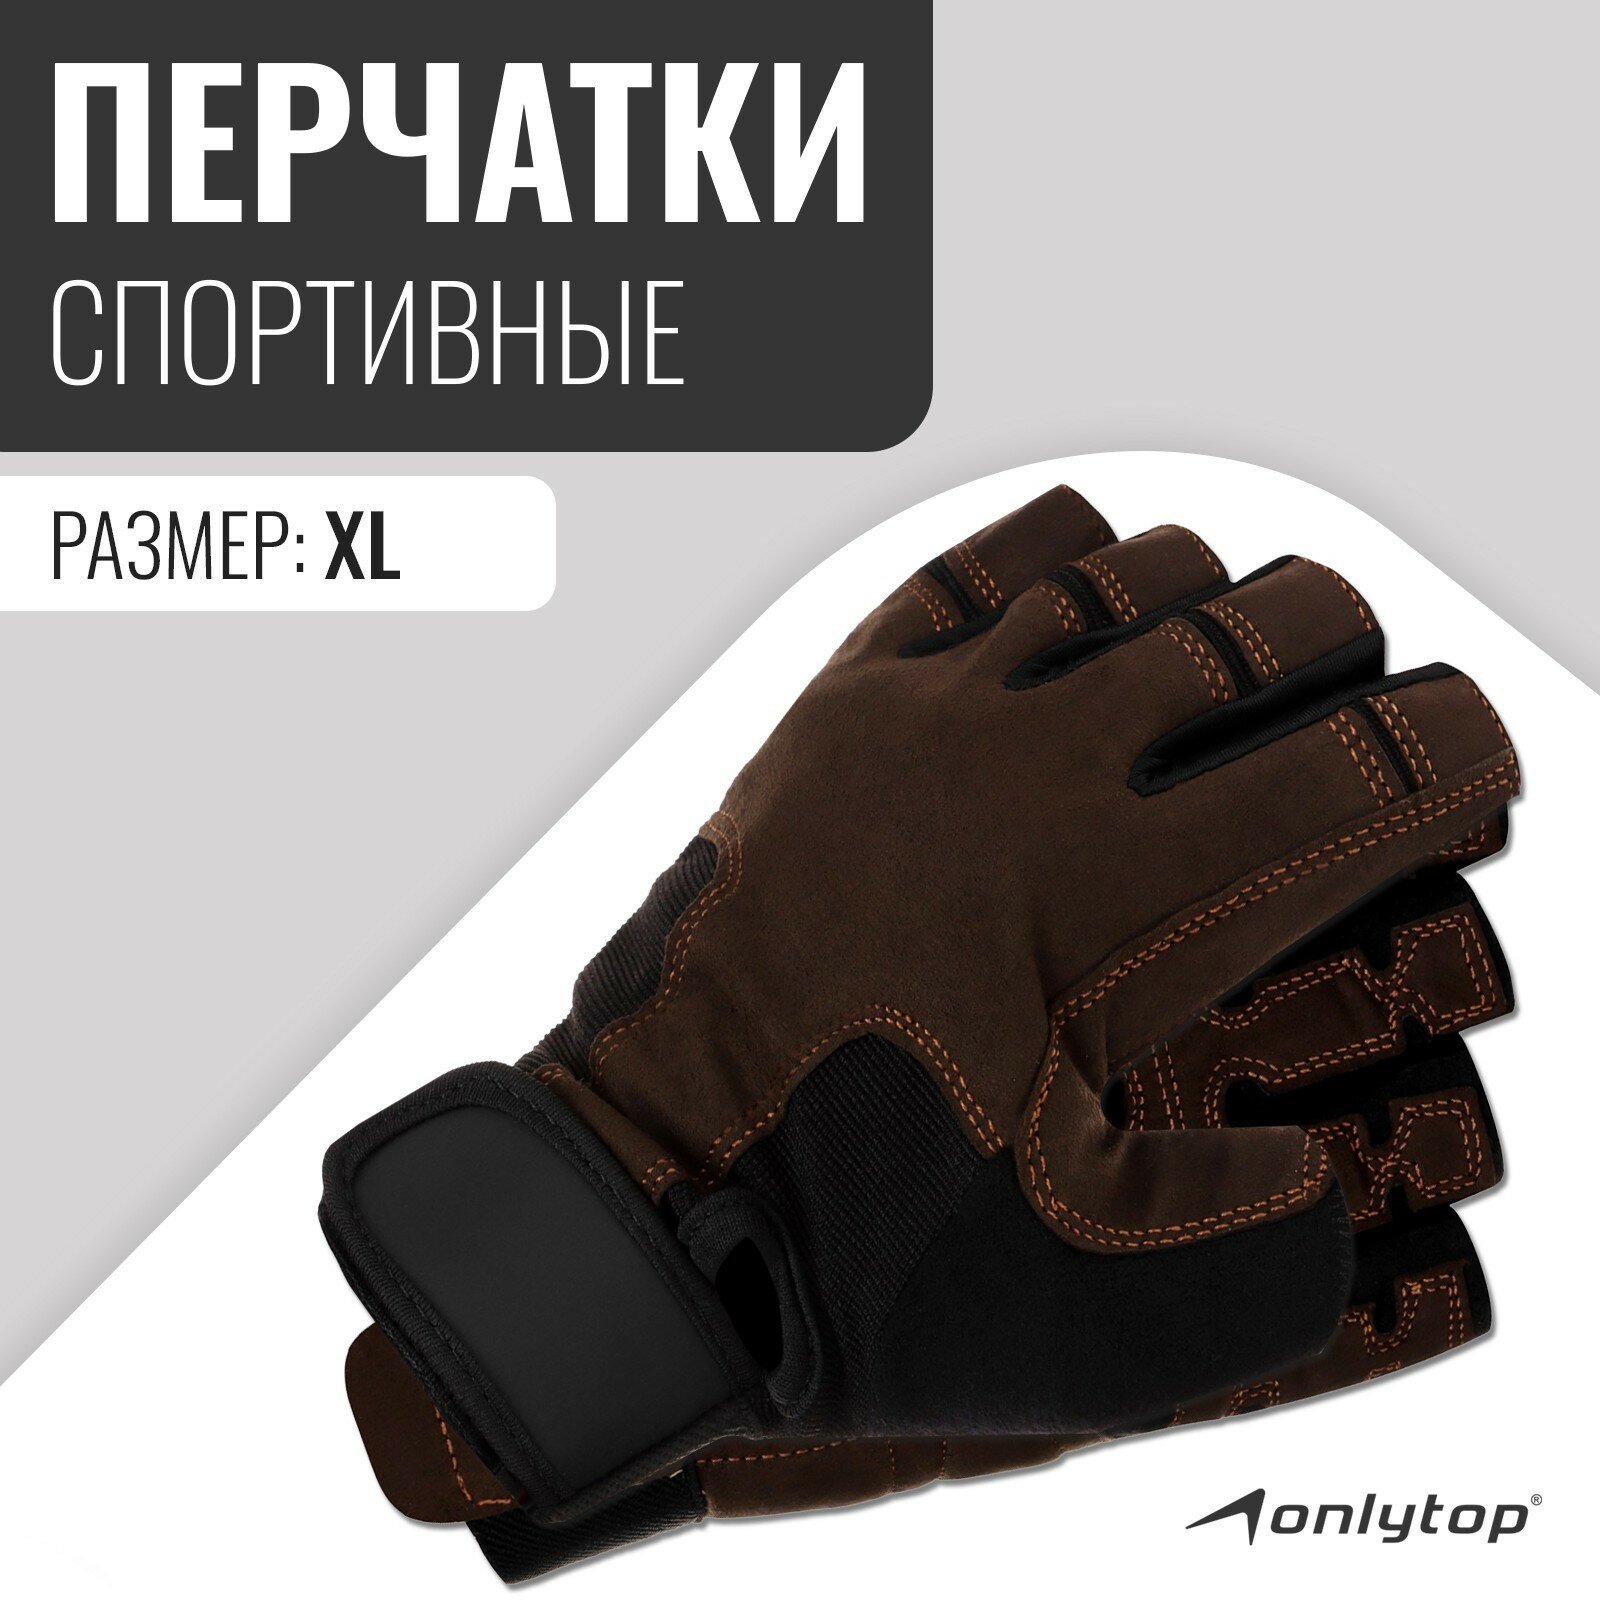 Спортивные перчатки ONLYTOP модель 9053, размер XL, цвет коричневый